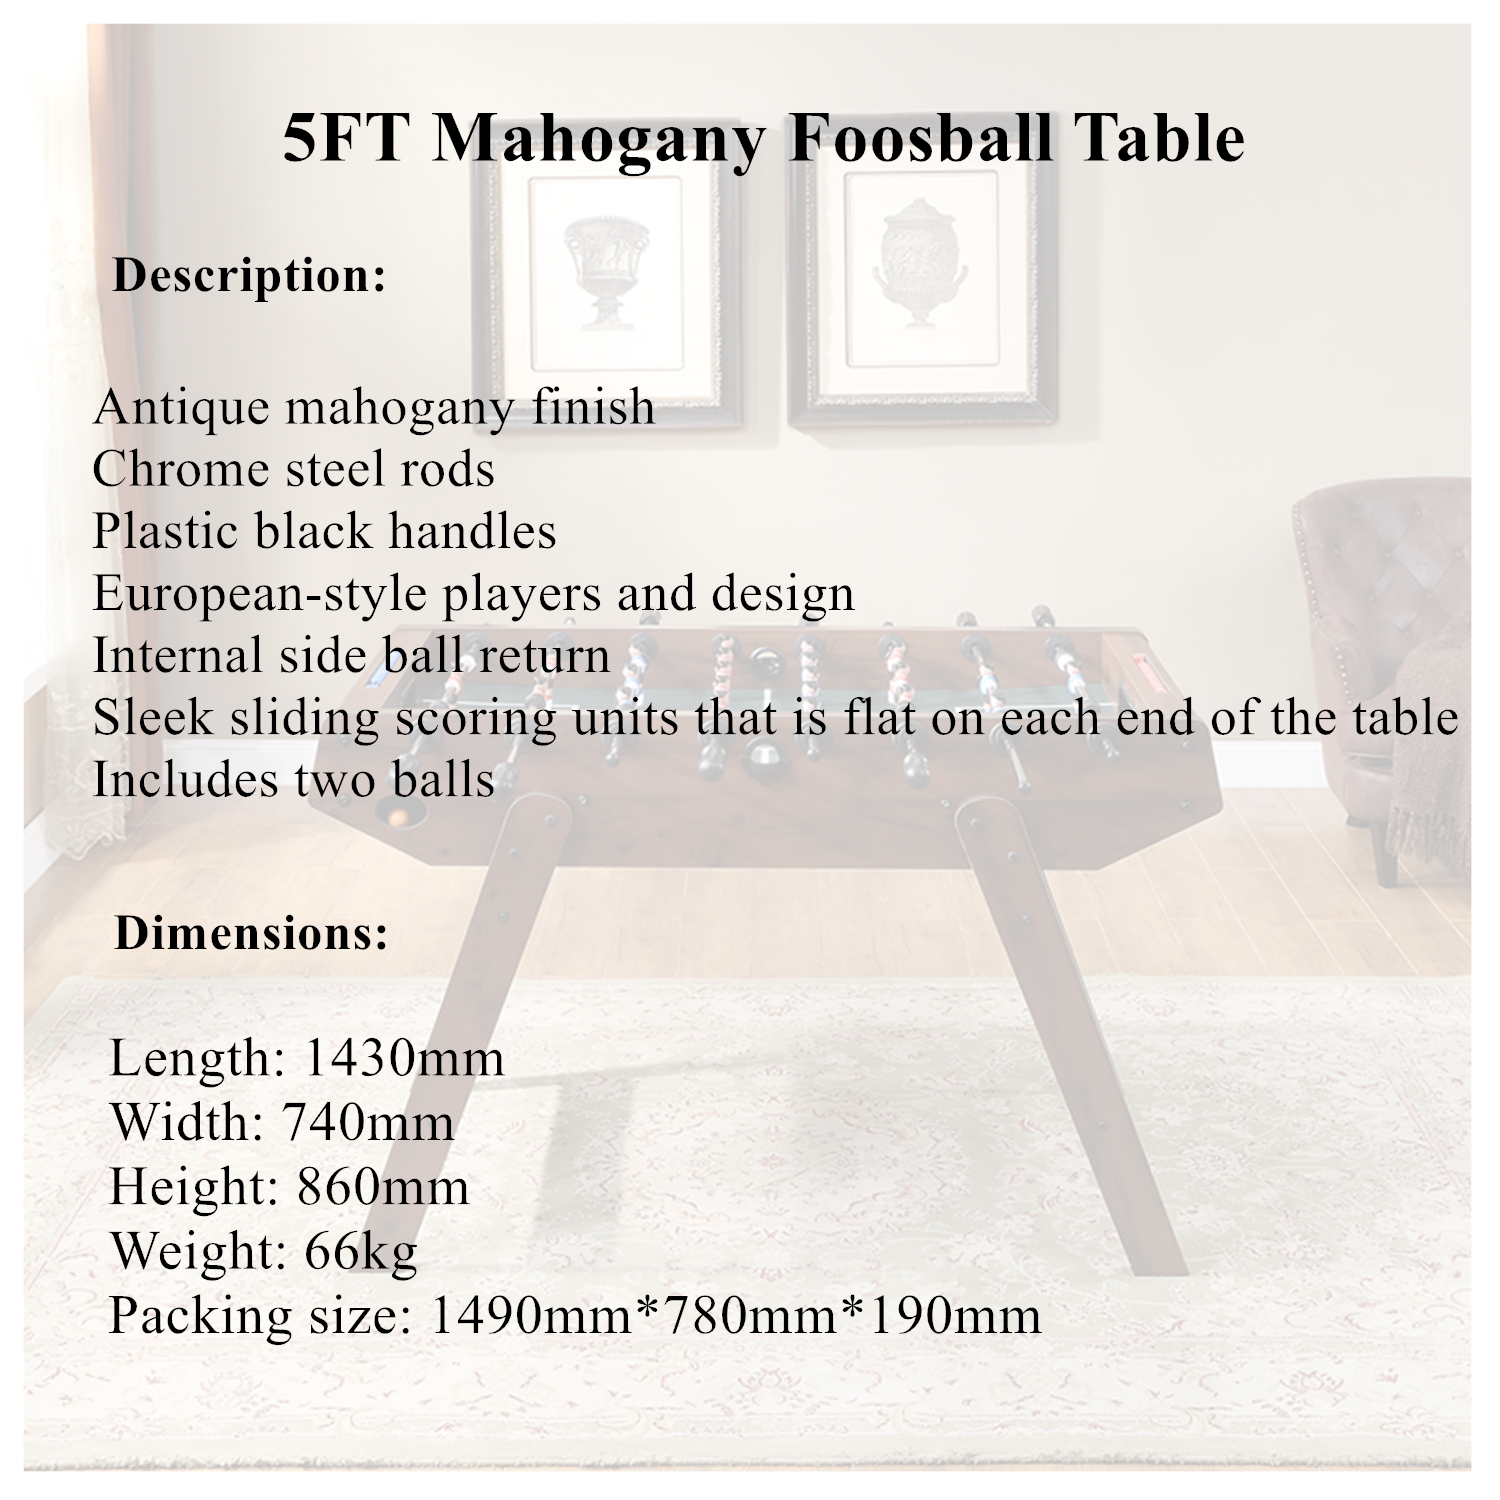 5FT Mahogany Foosball Table